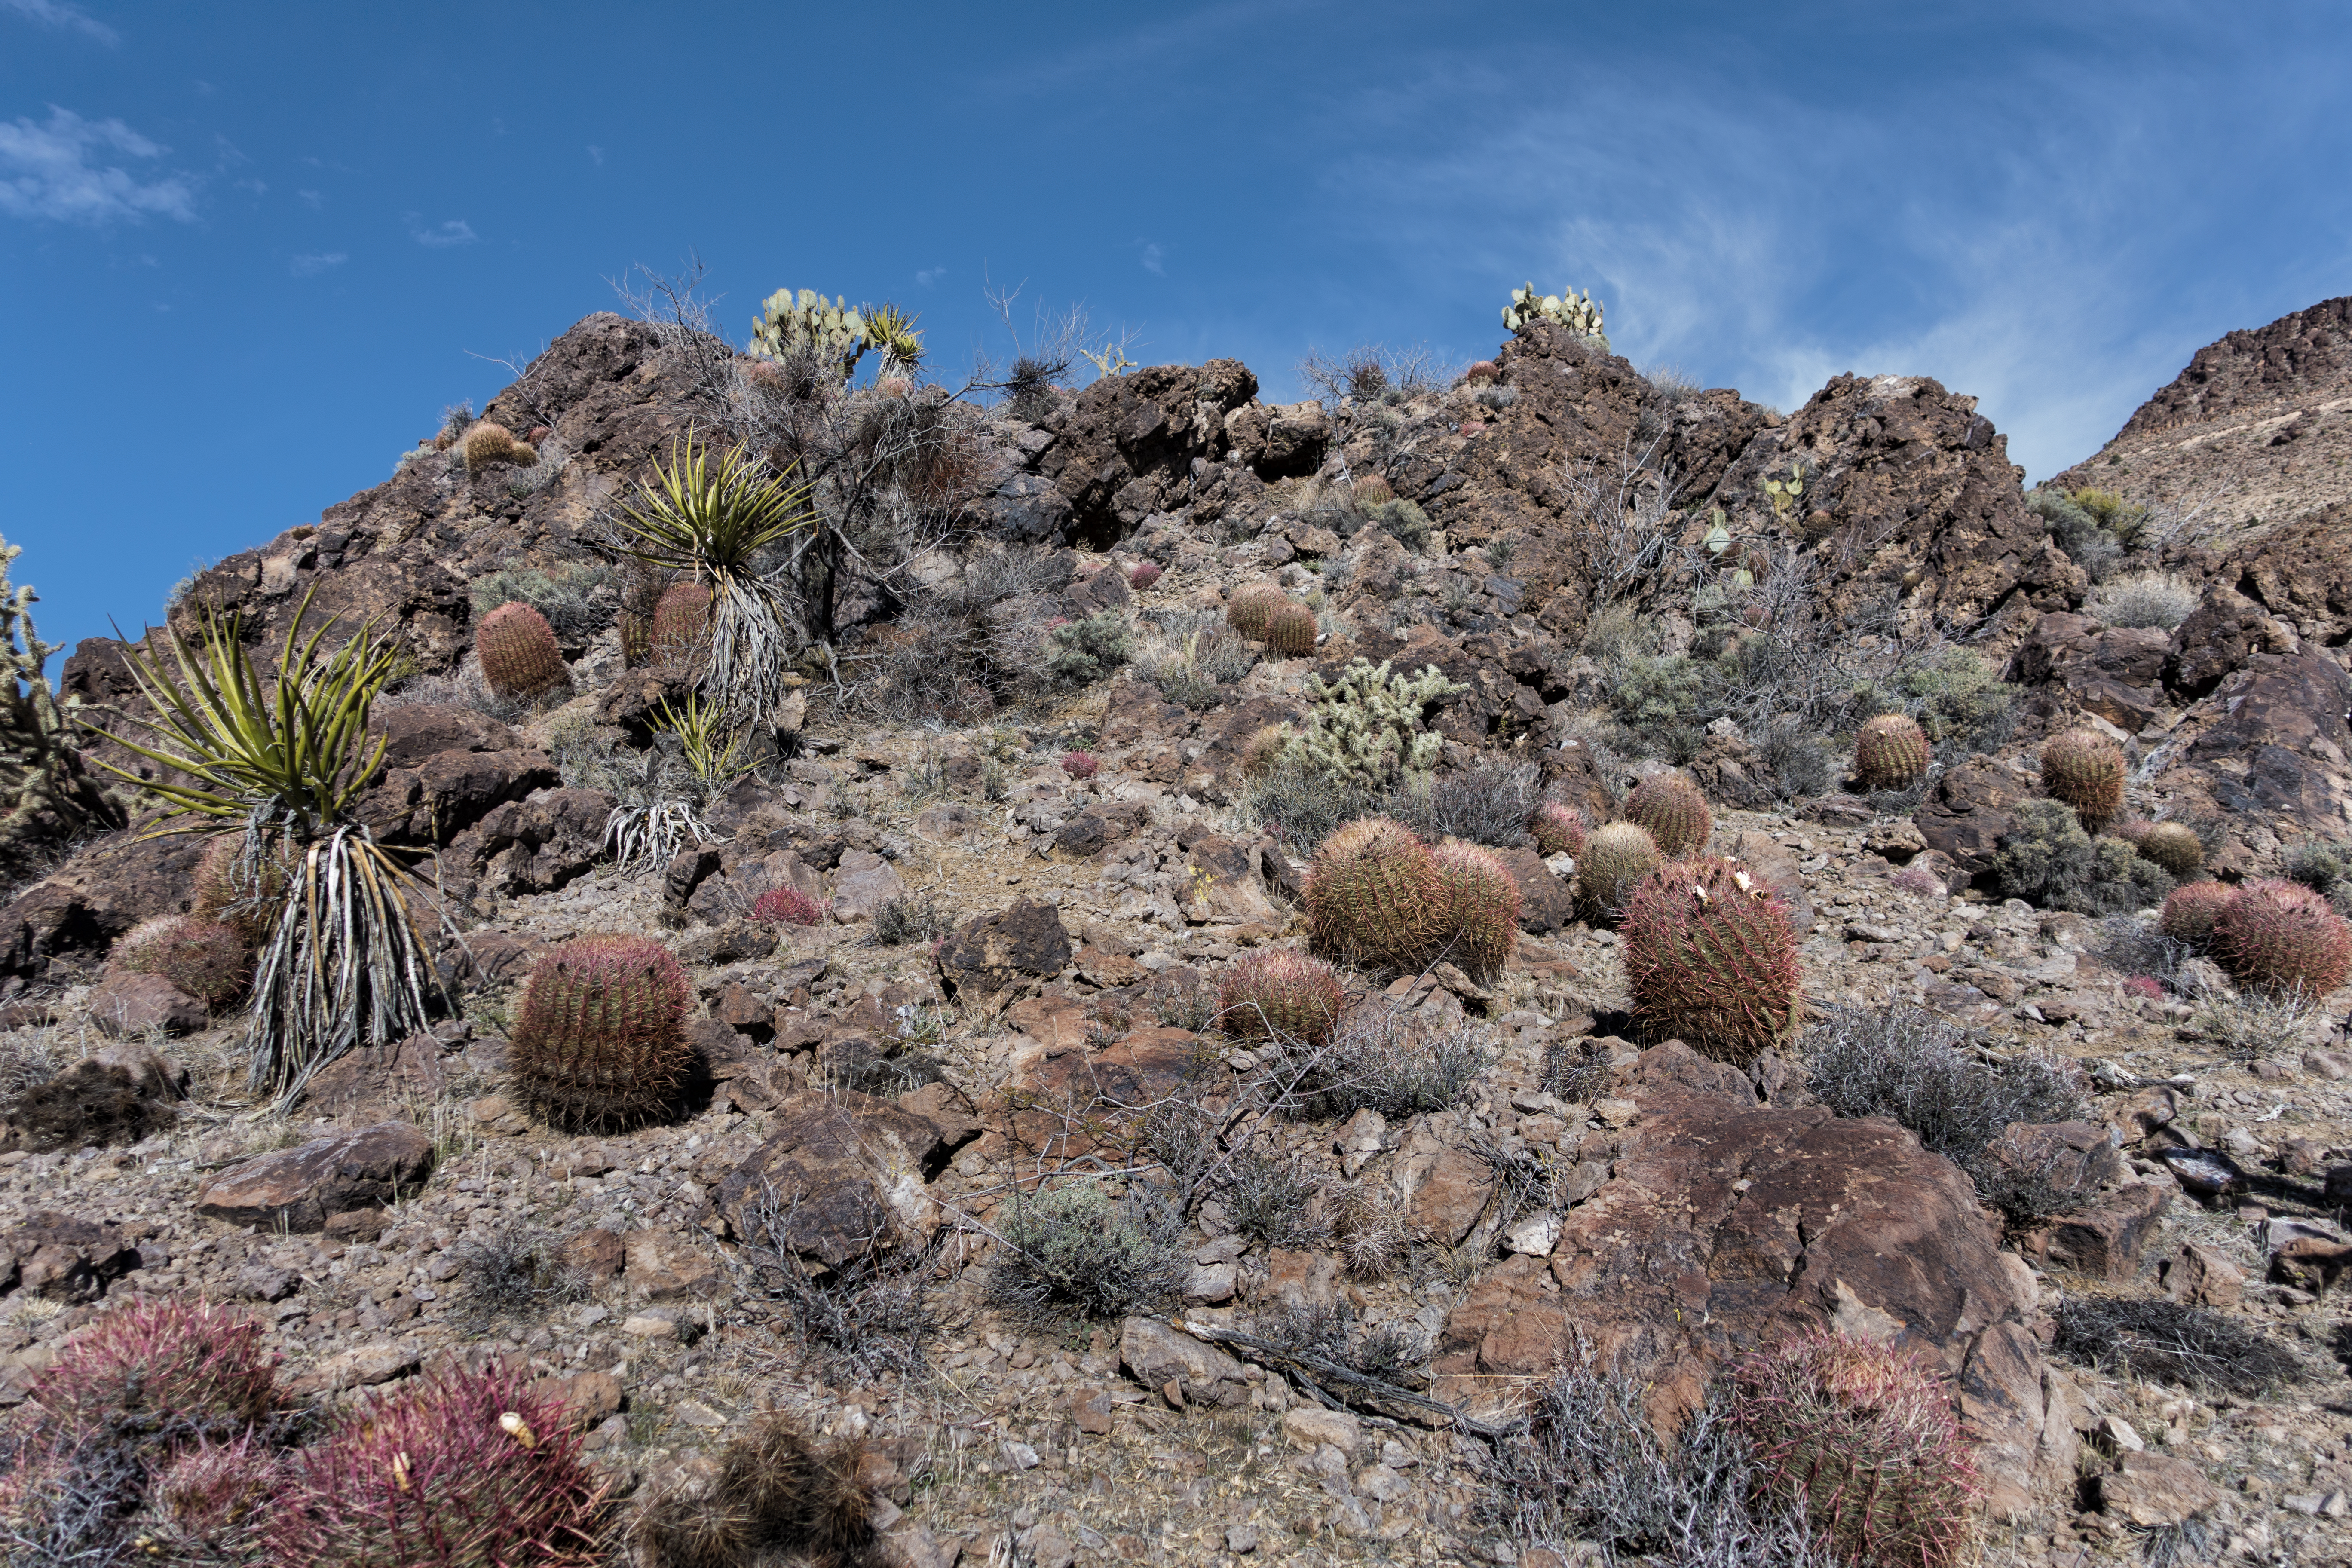 Las plantas del desierto, como la yuca, el cactus cholla y el nopal, crecen entre parches de suelo desnudo y roca.